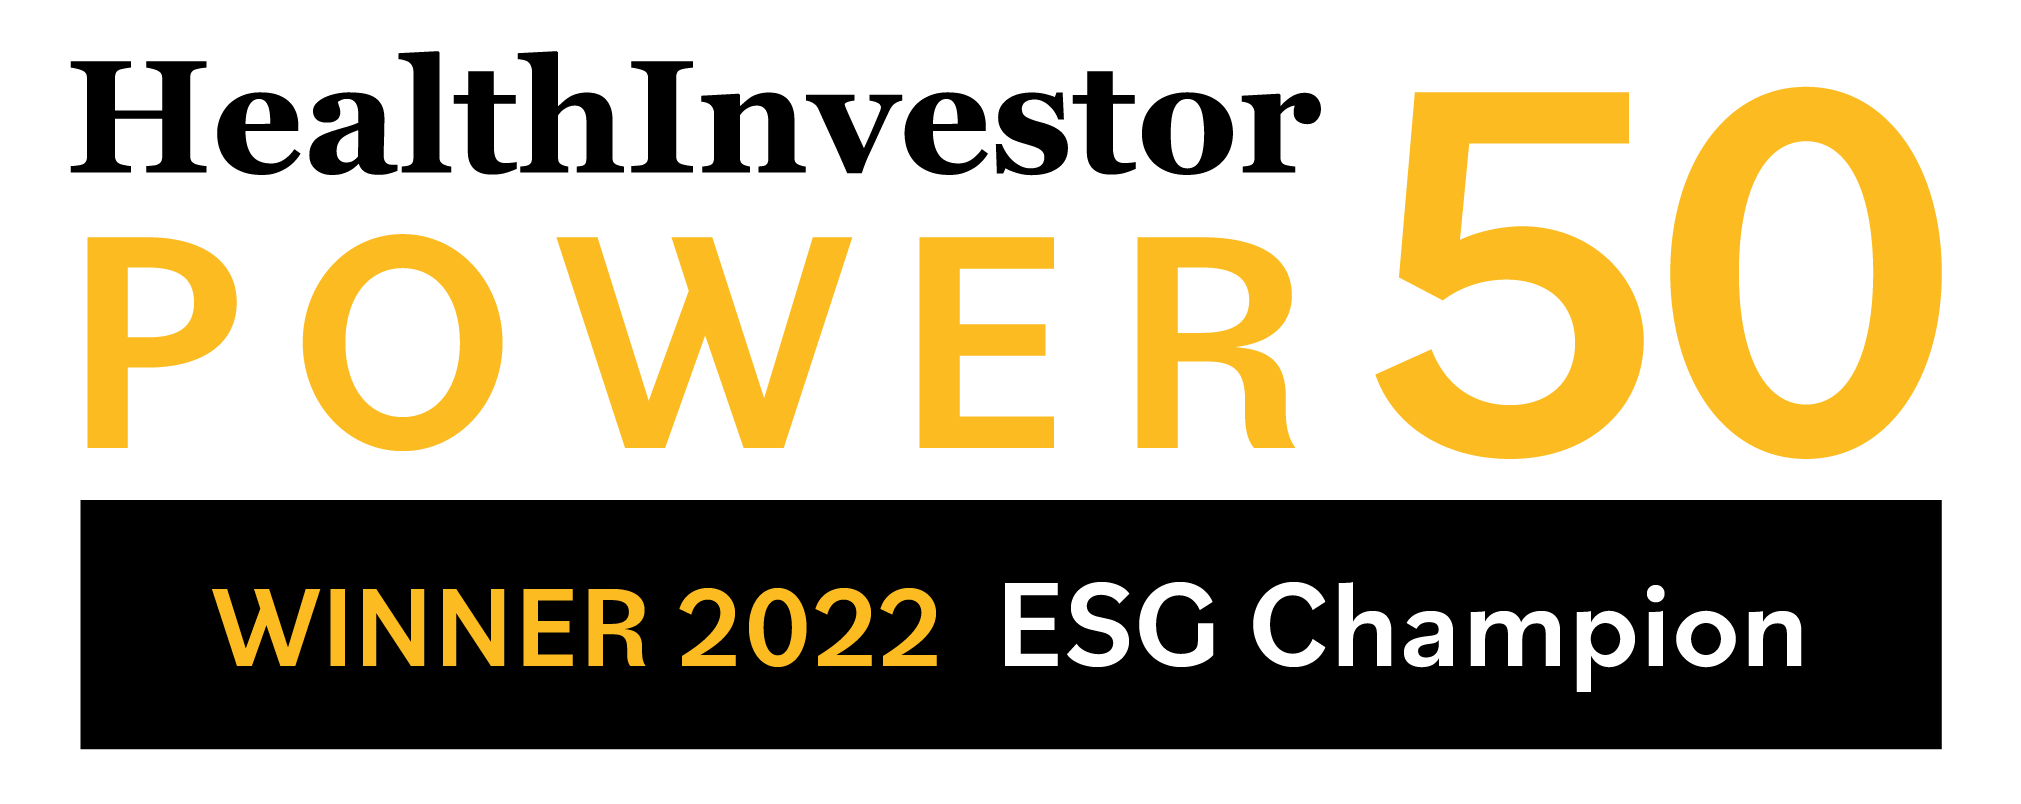 HealthInvestor Power 50 Winner 2022 ESG Champion